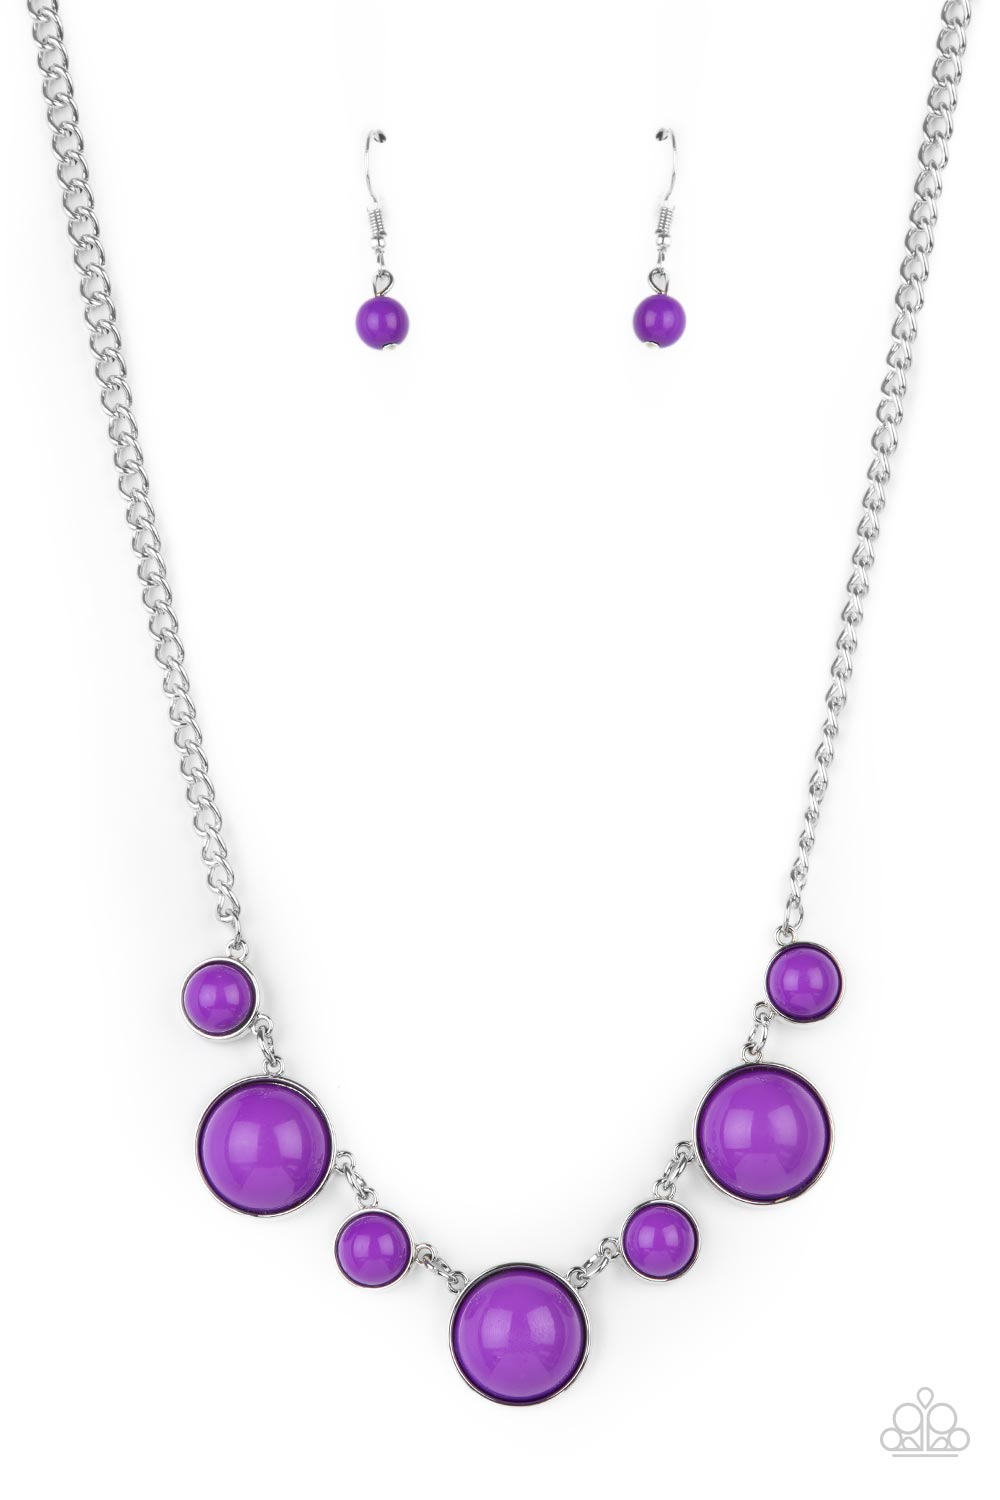 Paparazzi Prismatically POP-tastic Purple Short Necklace